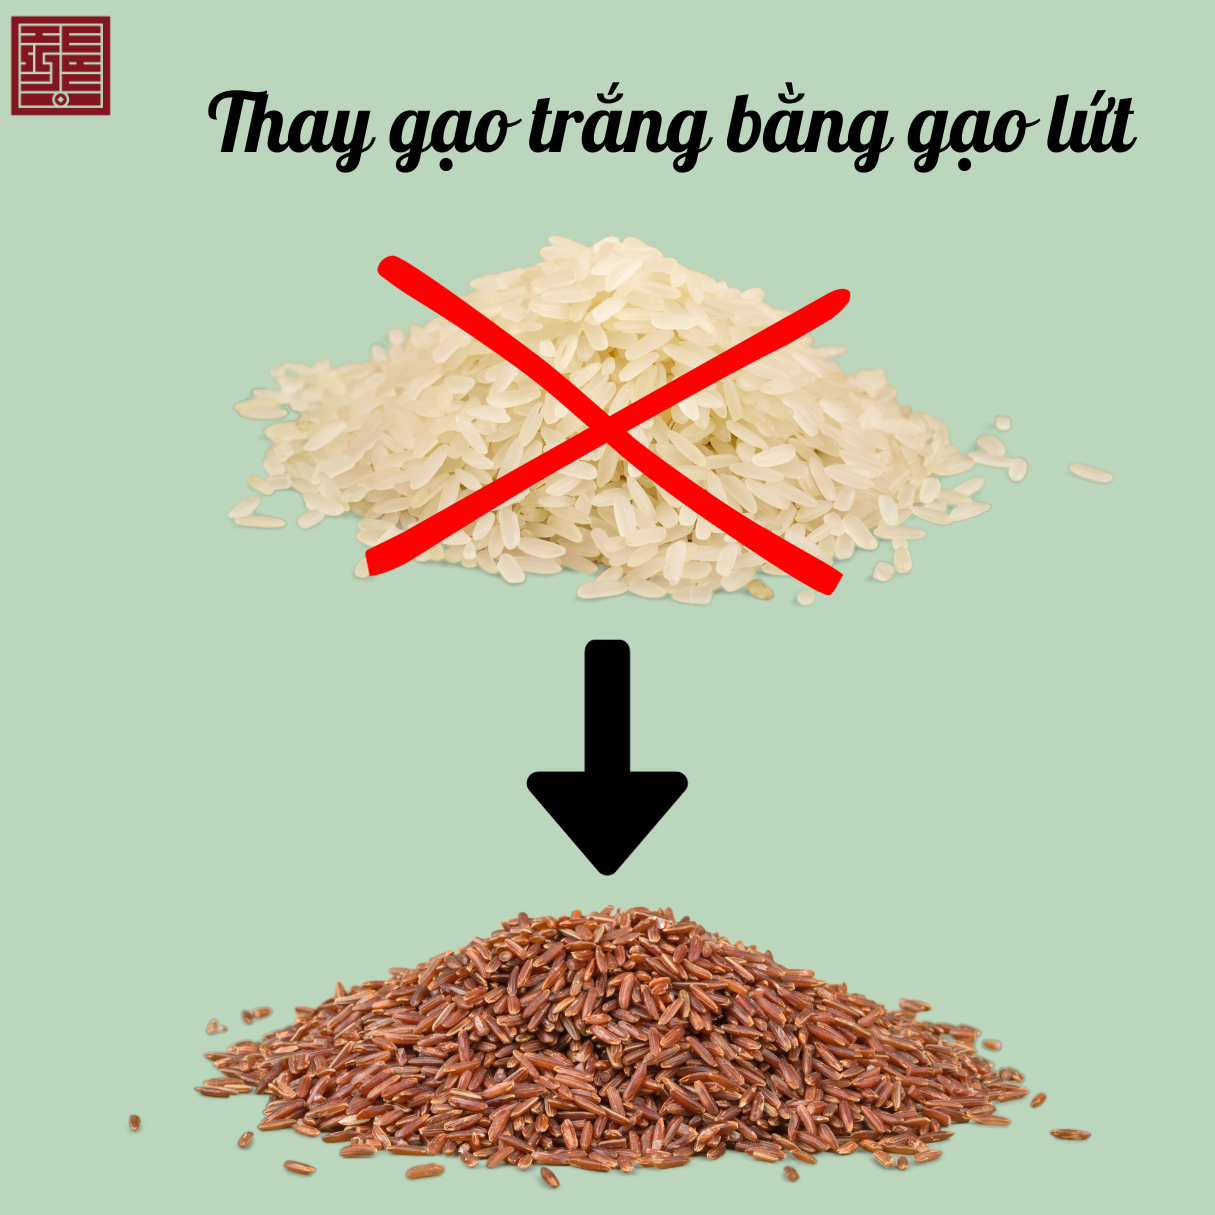 1. Sử dụng gạo lứt cho bữa ăn thay vì gạo xát trắng